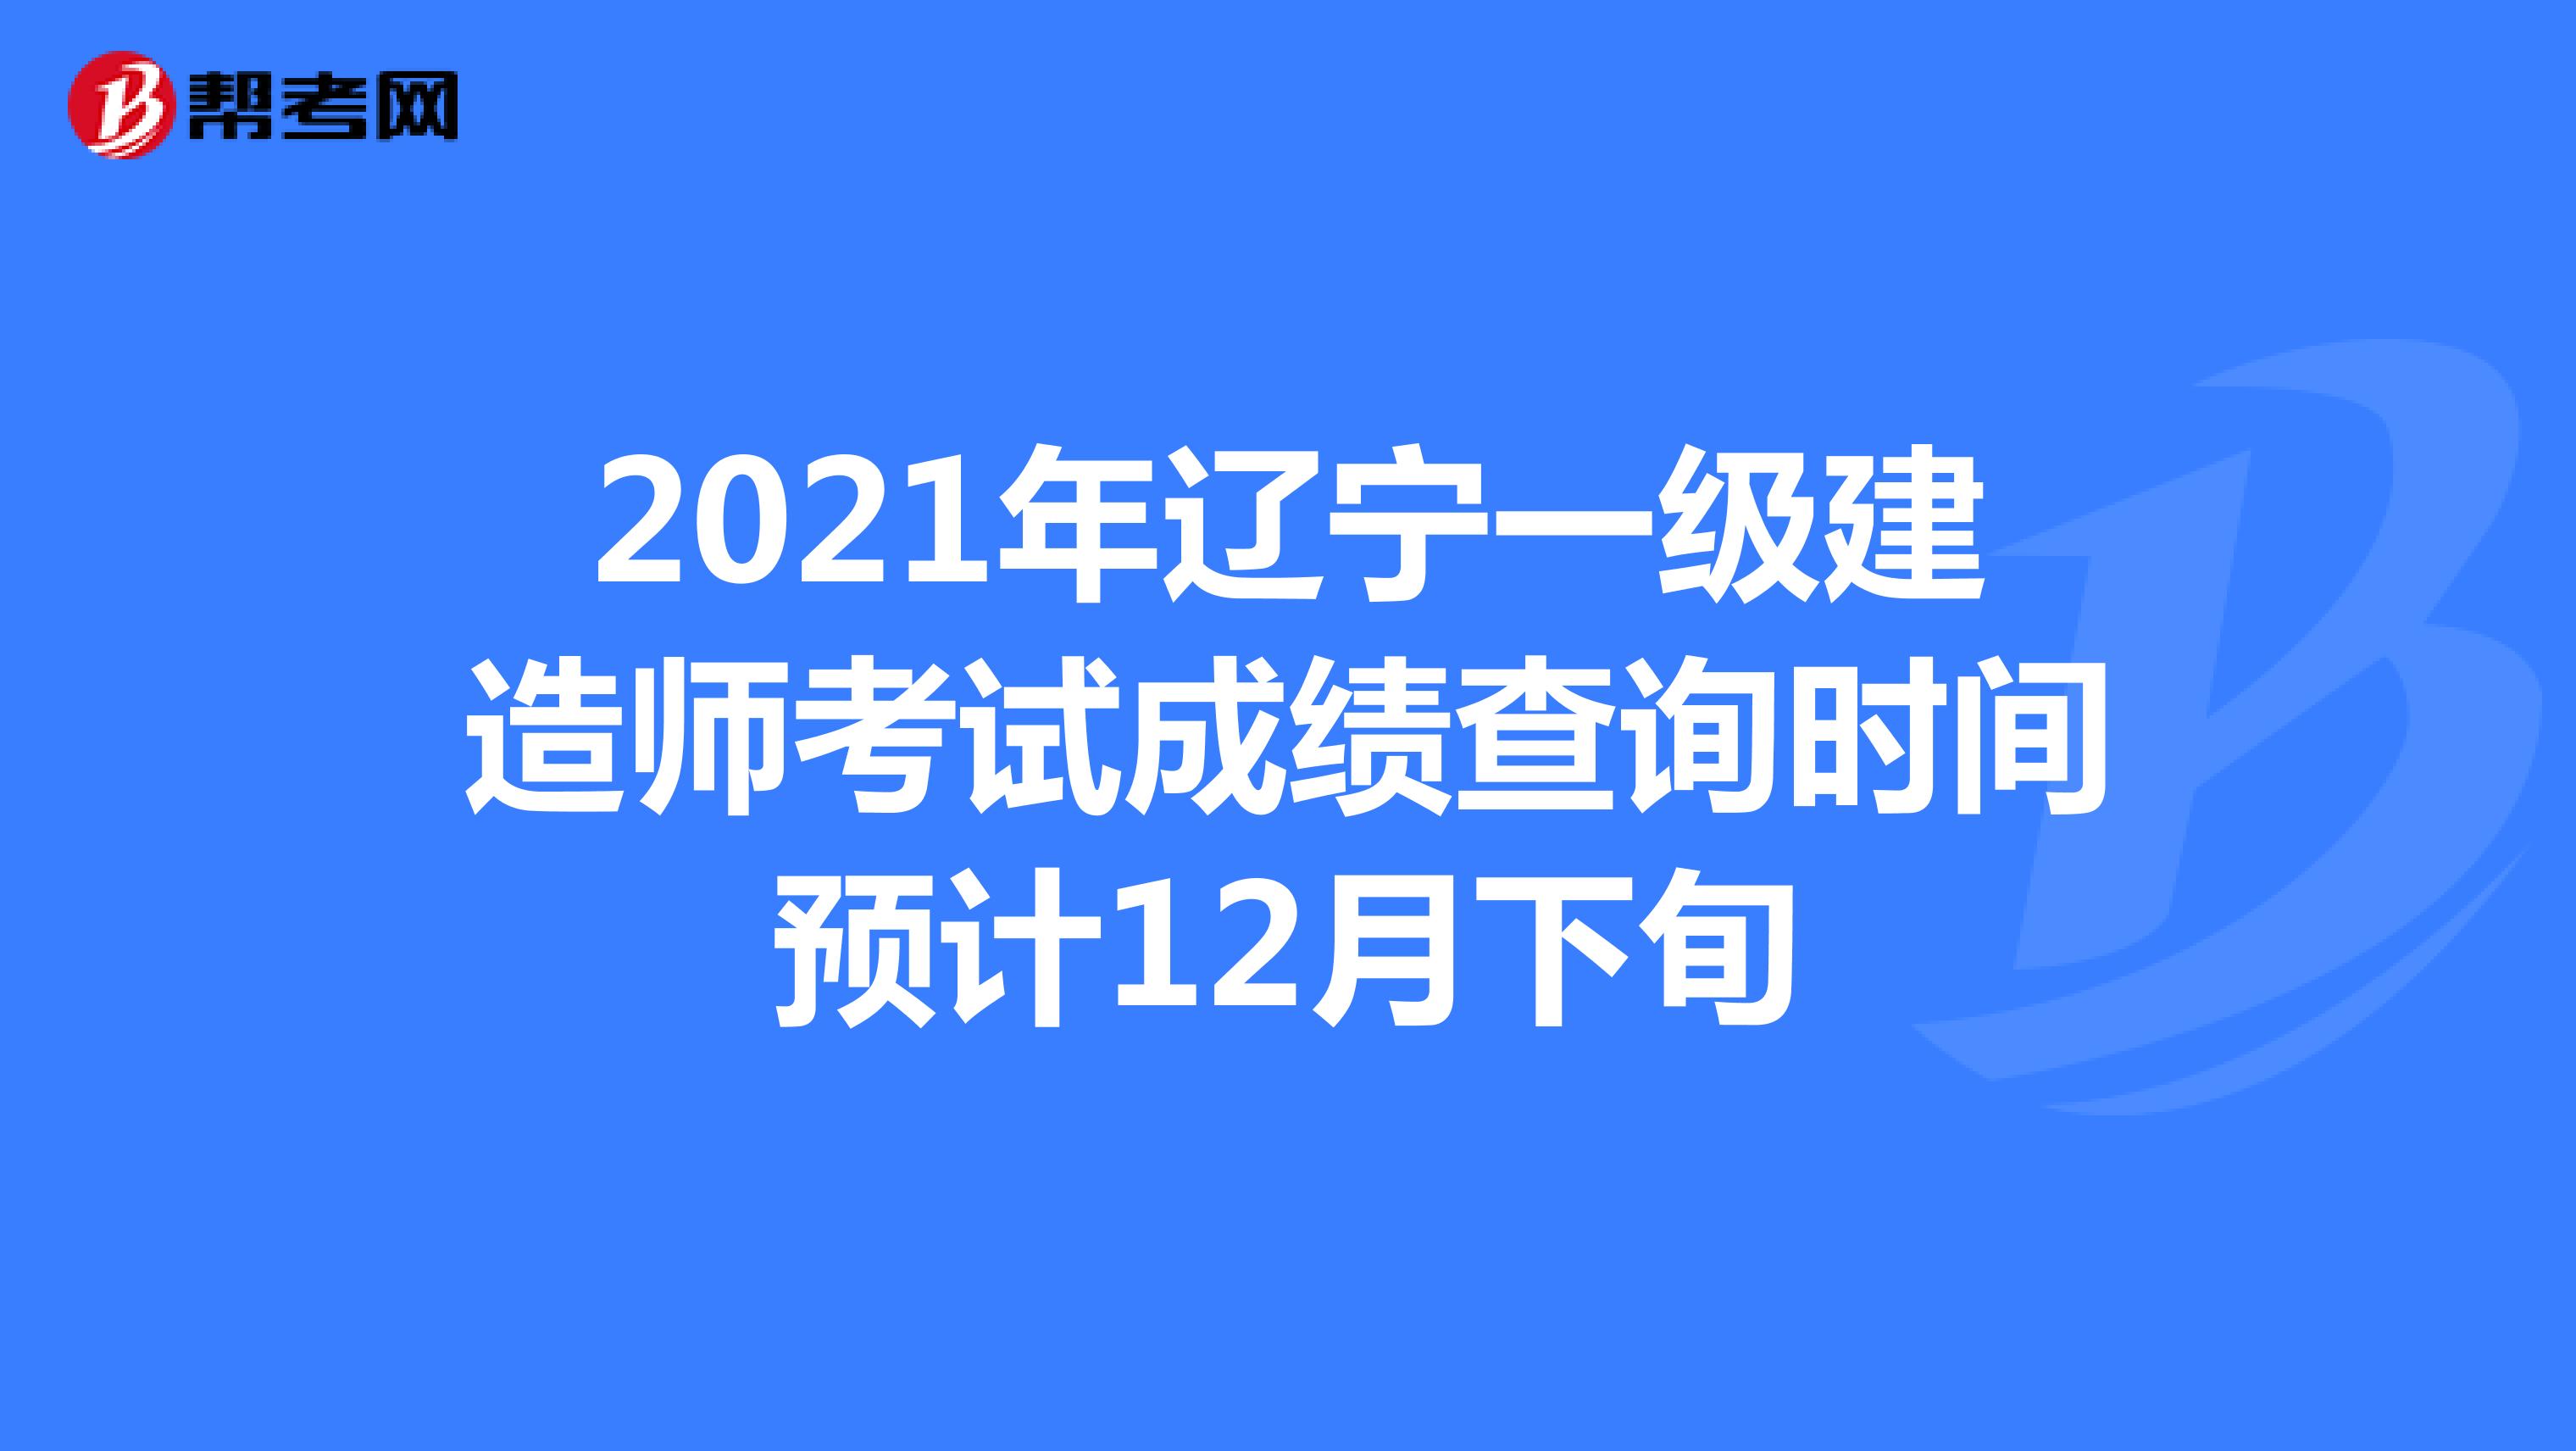 2021年辽宁一级建造师考试成绩查询时间预计12月下旬